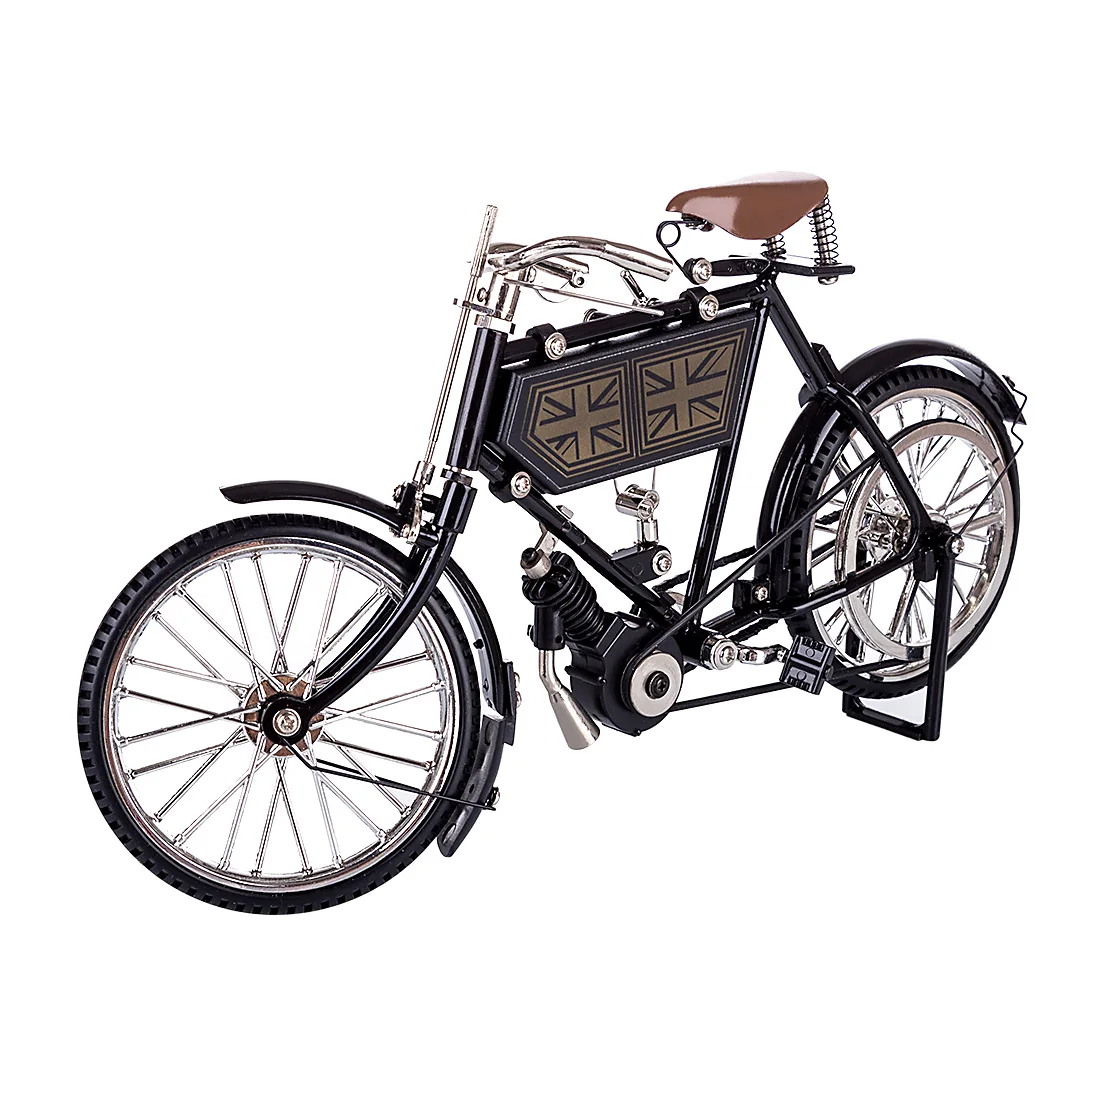 NFSTRIKE металлическая Сборная модель велосипеда, ретро украшение, миниатюрная модель велосипеда, коллекция, рождественские подарки 2019